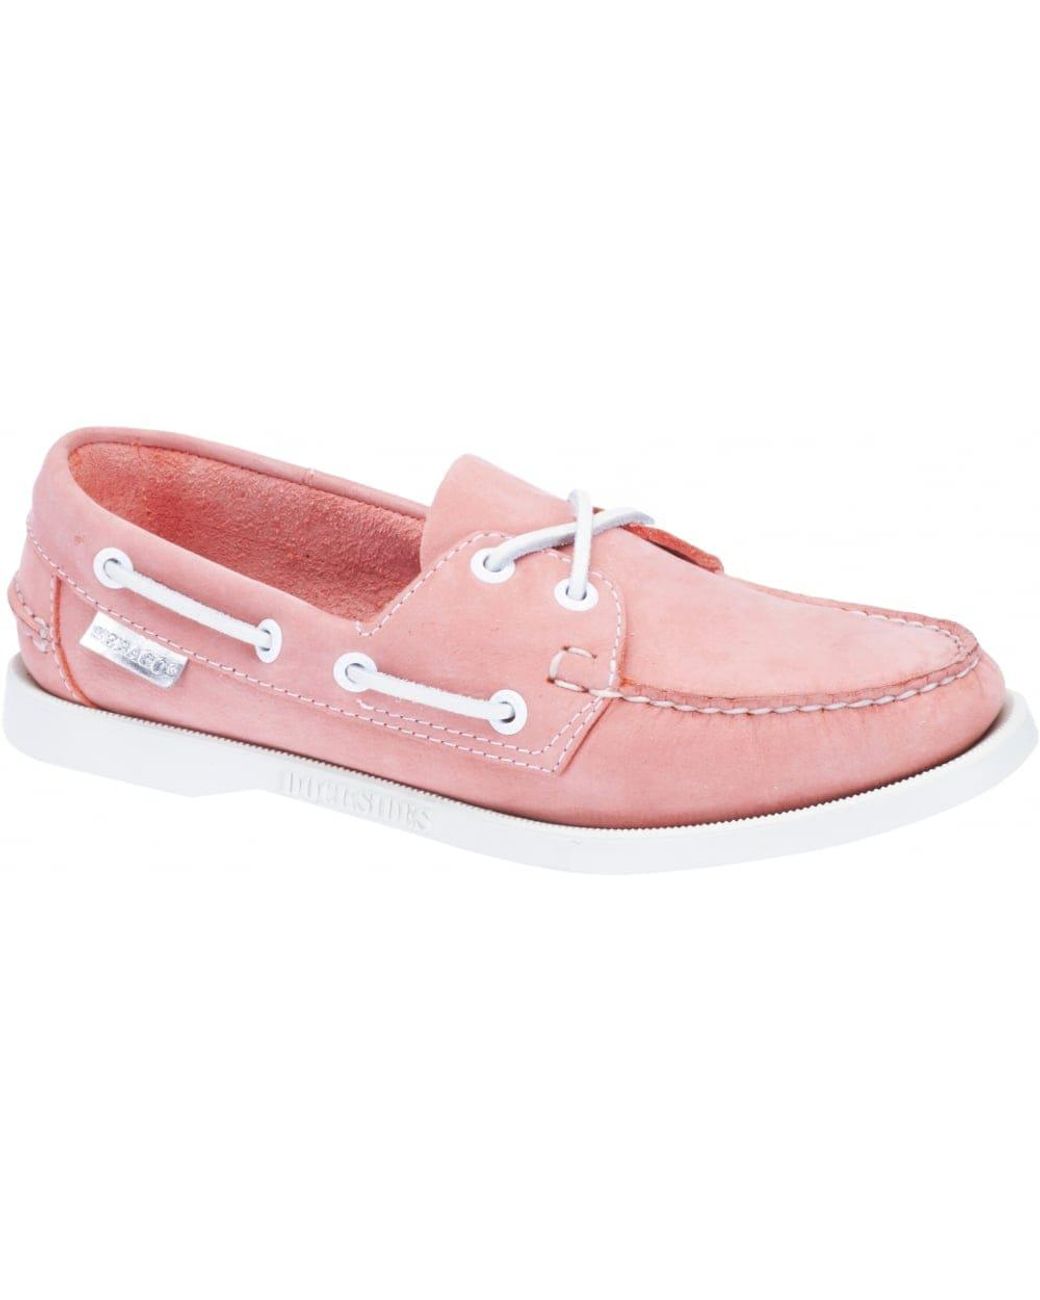 Sebago Docksides Ladies Boat Shoe in Pink | Lyst